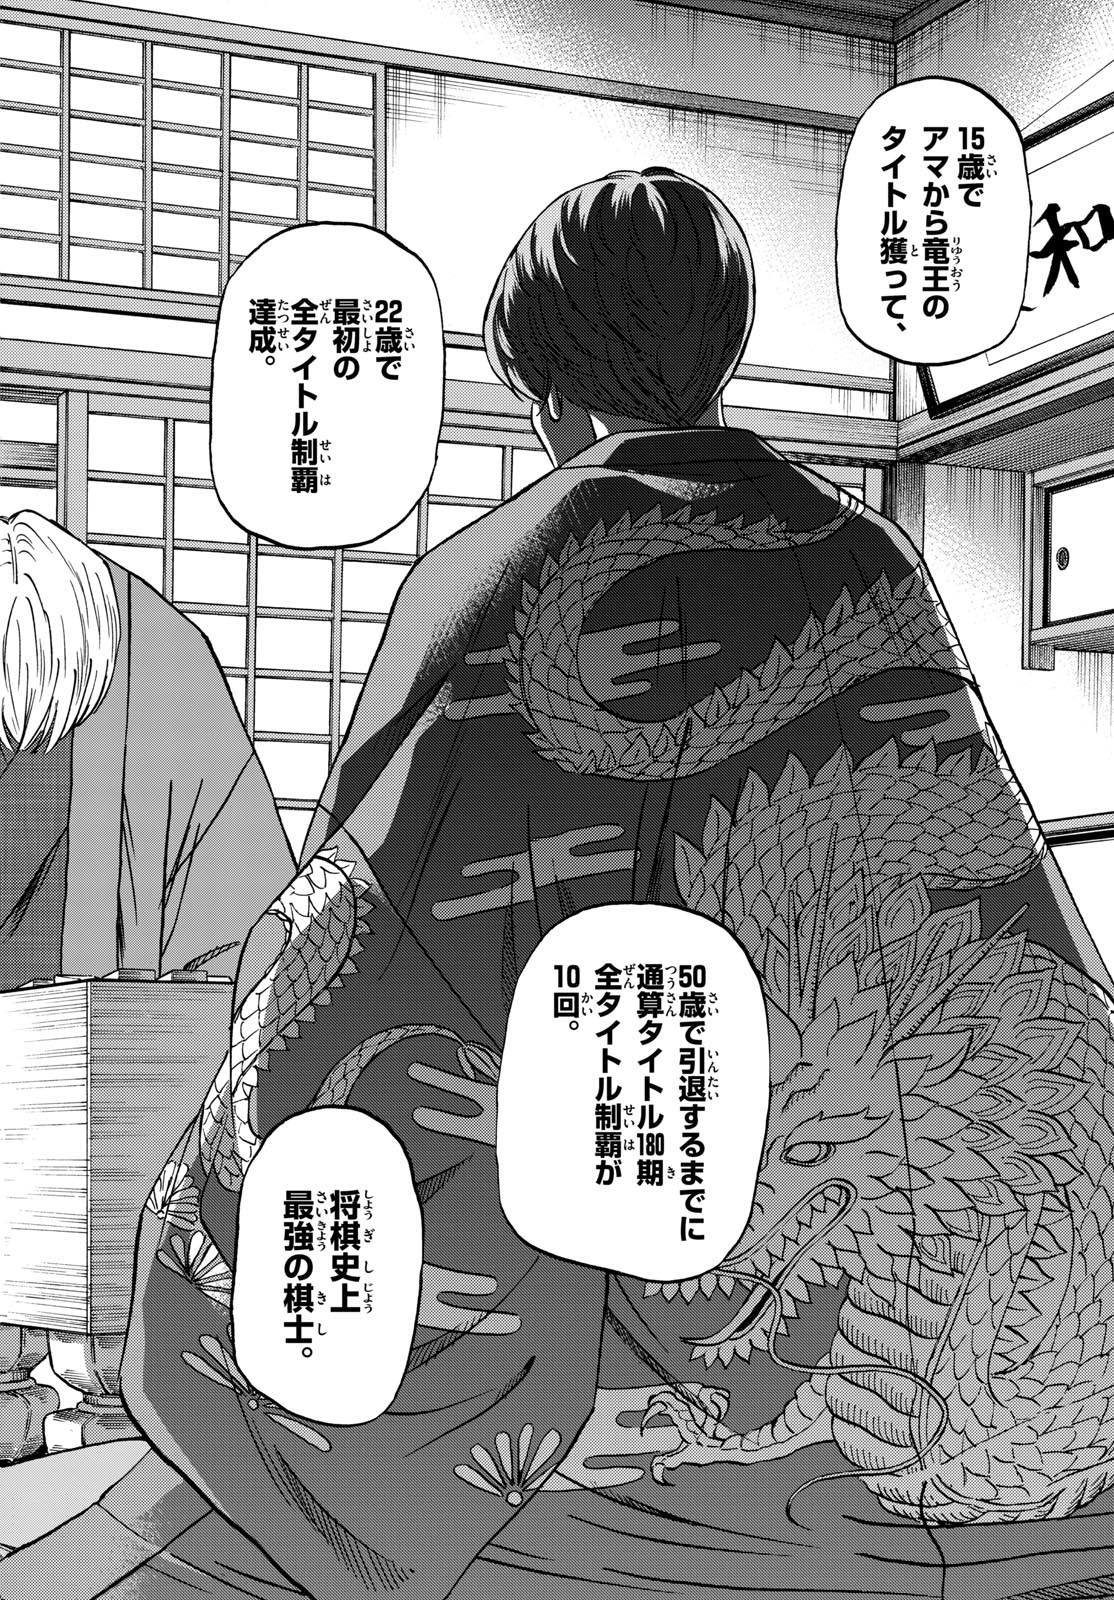 Tatsu to Ichigo - Chapter 183 - Page 6